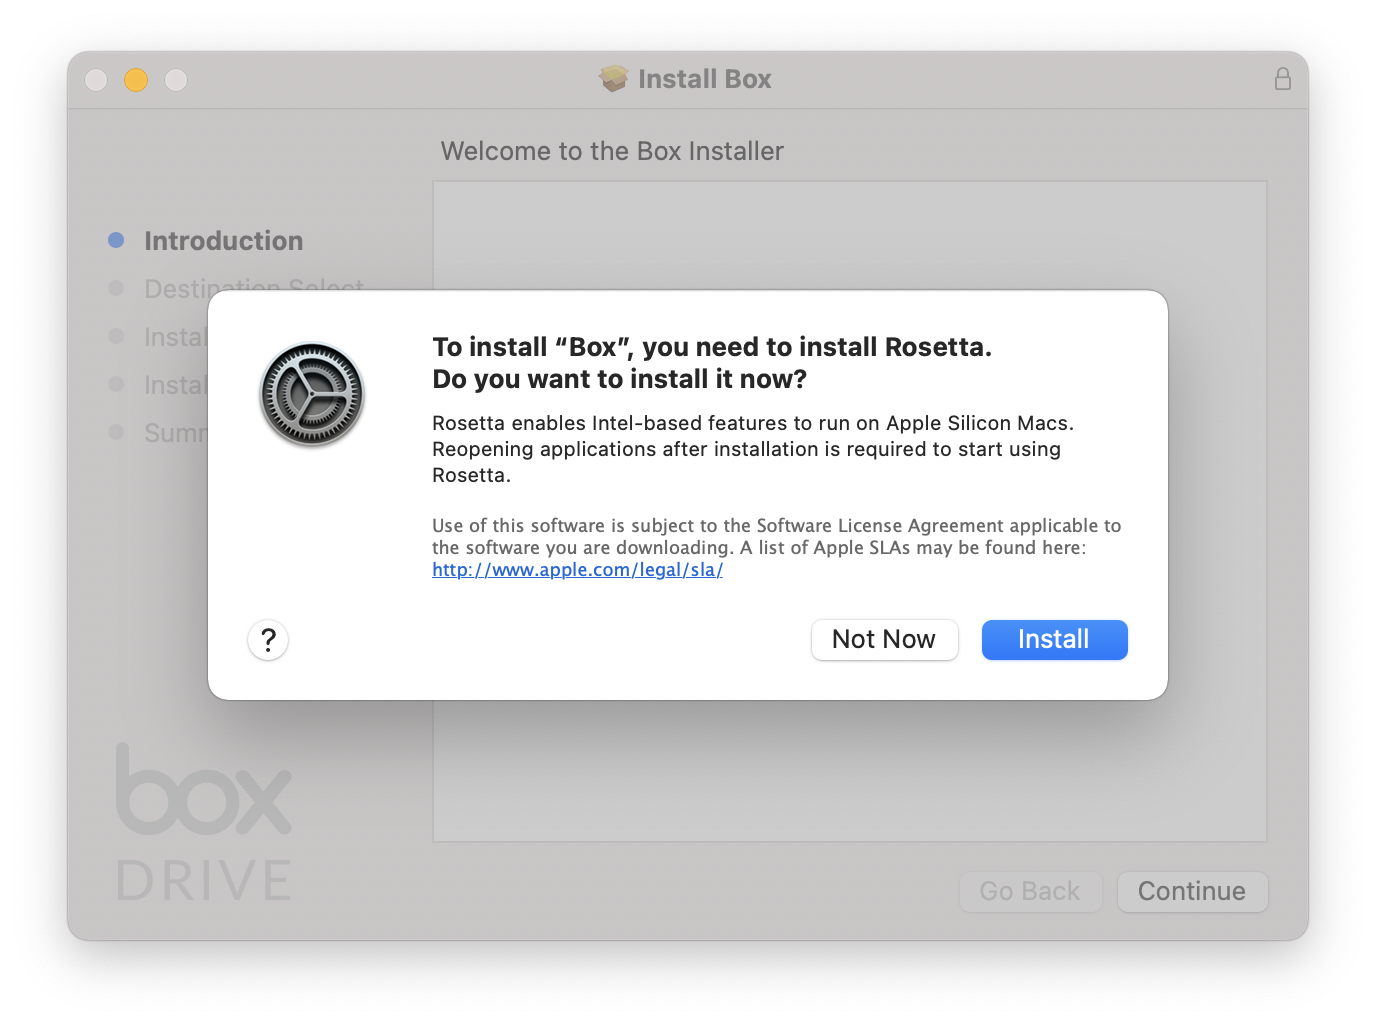 Installing Box requires Rosetta